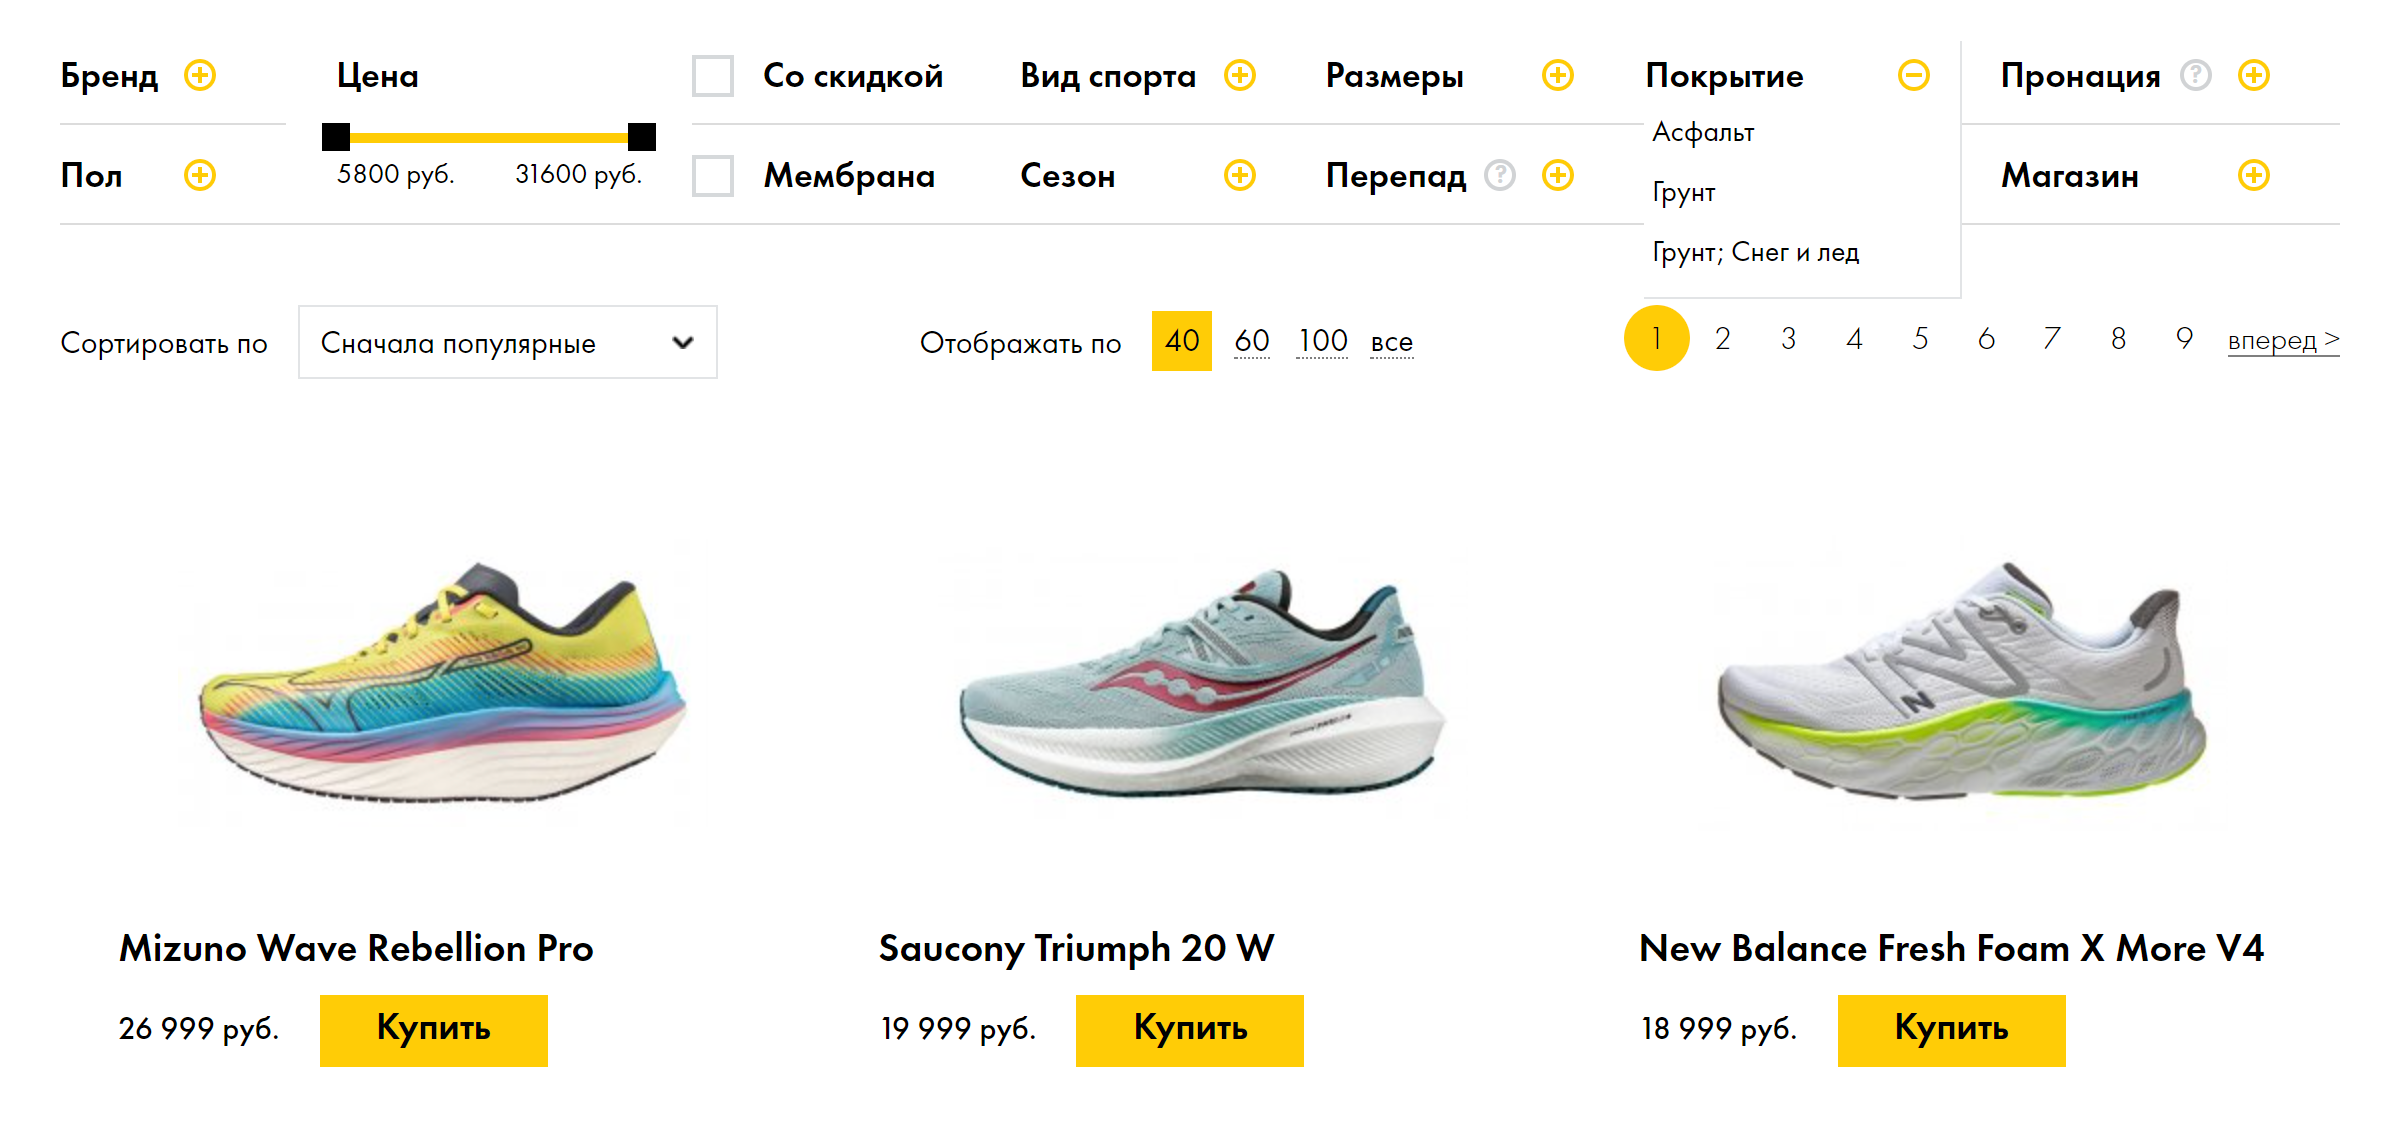 Большинство специализированных магазинов позволяют отсортировать модели кроссовок по покрытию. Источник: runlab.ru